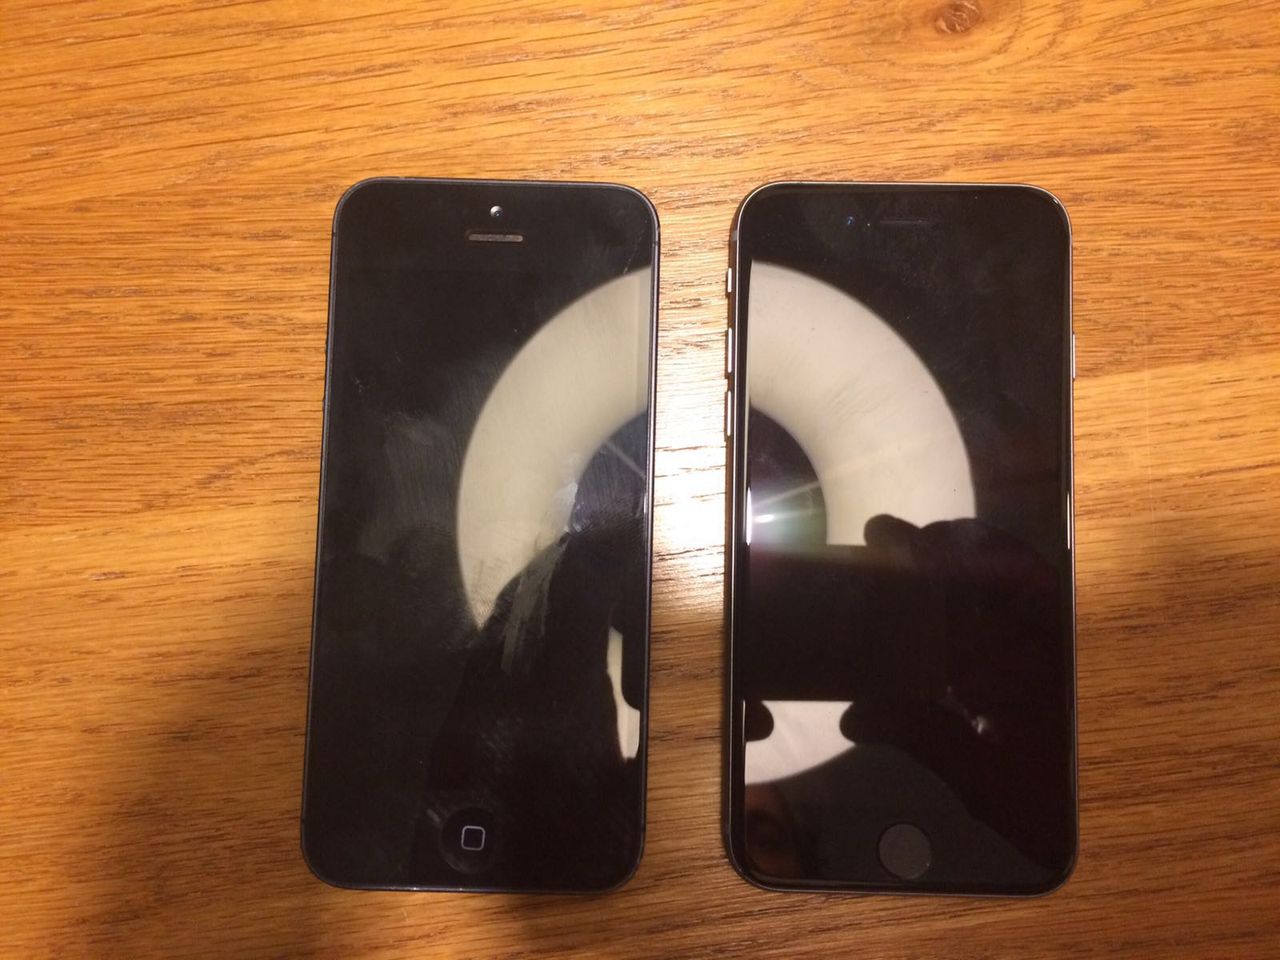 iPhone 5 (po lewej) oraz iPhone 5se (po prawej)